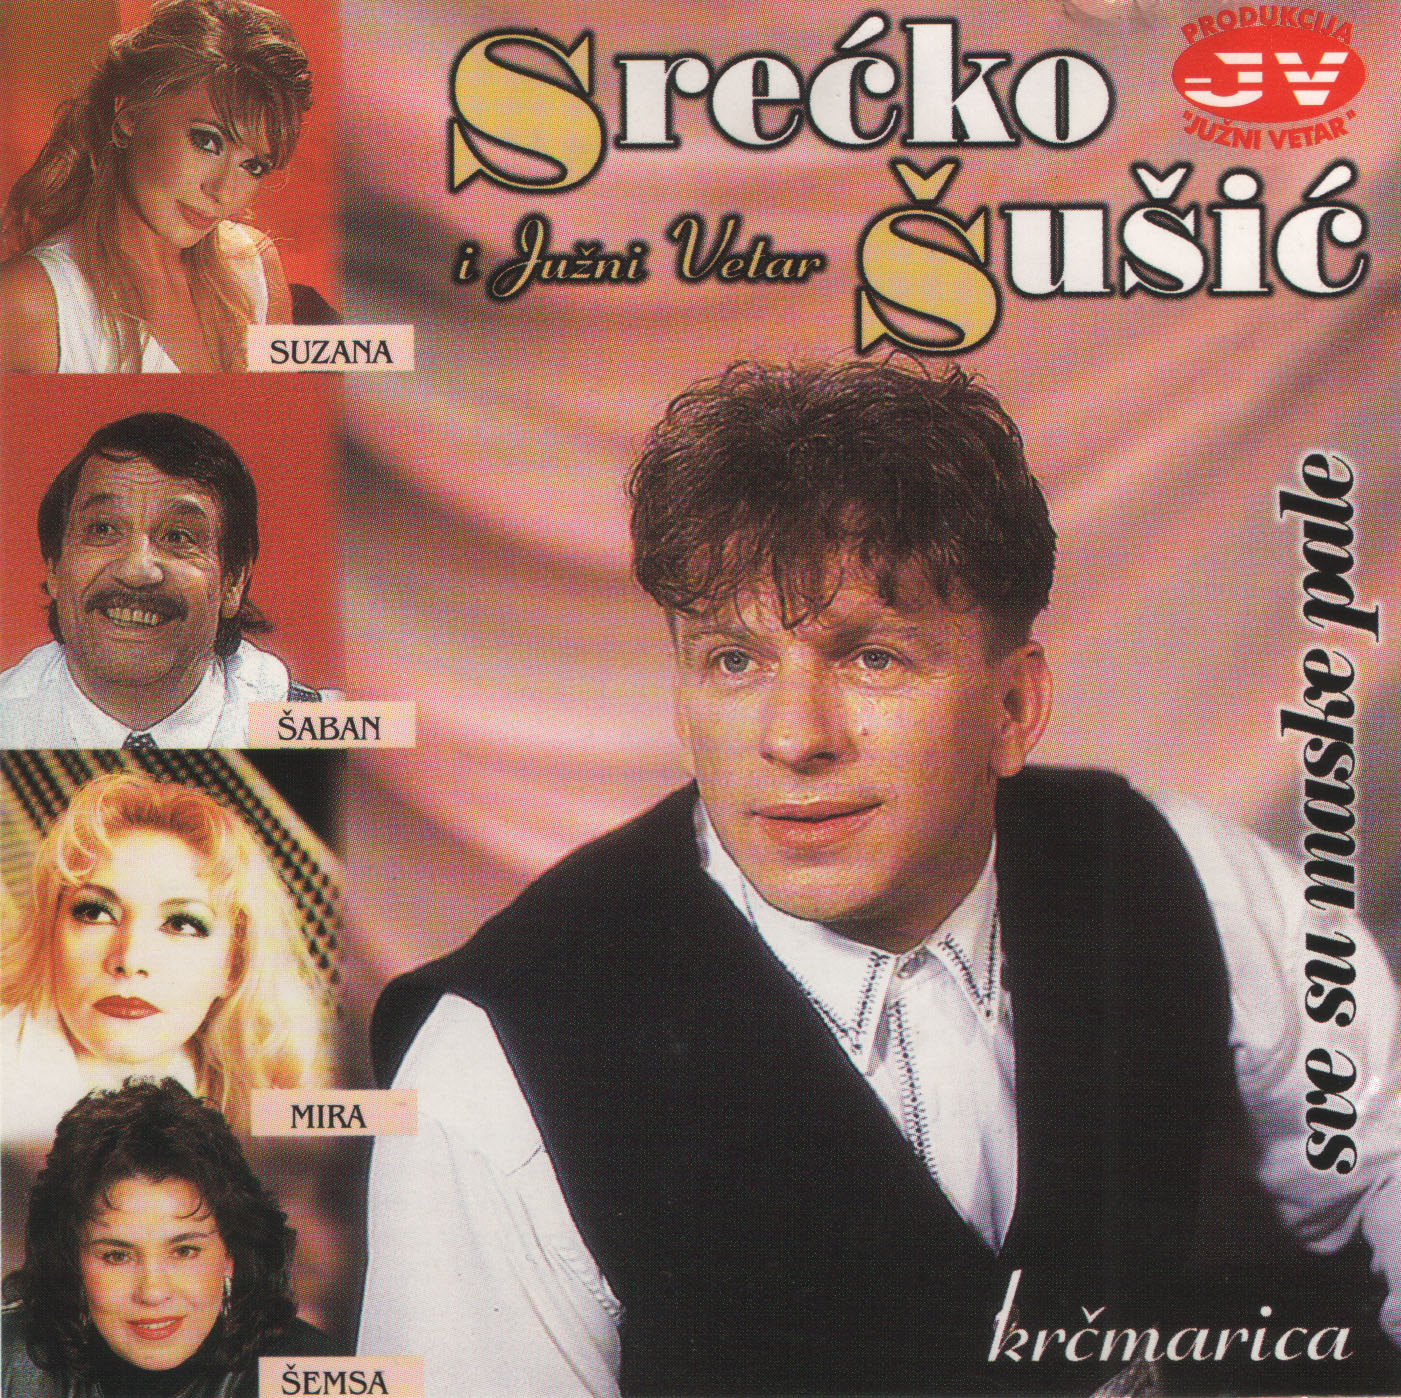 Srecko Susic 1997 Prednja